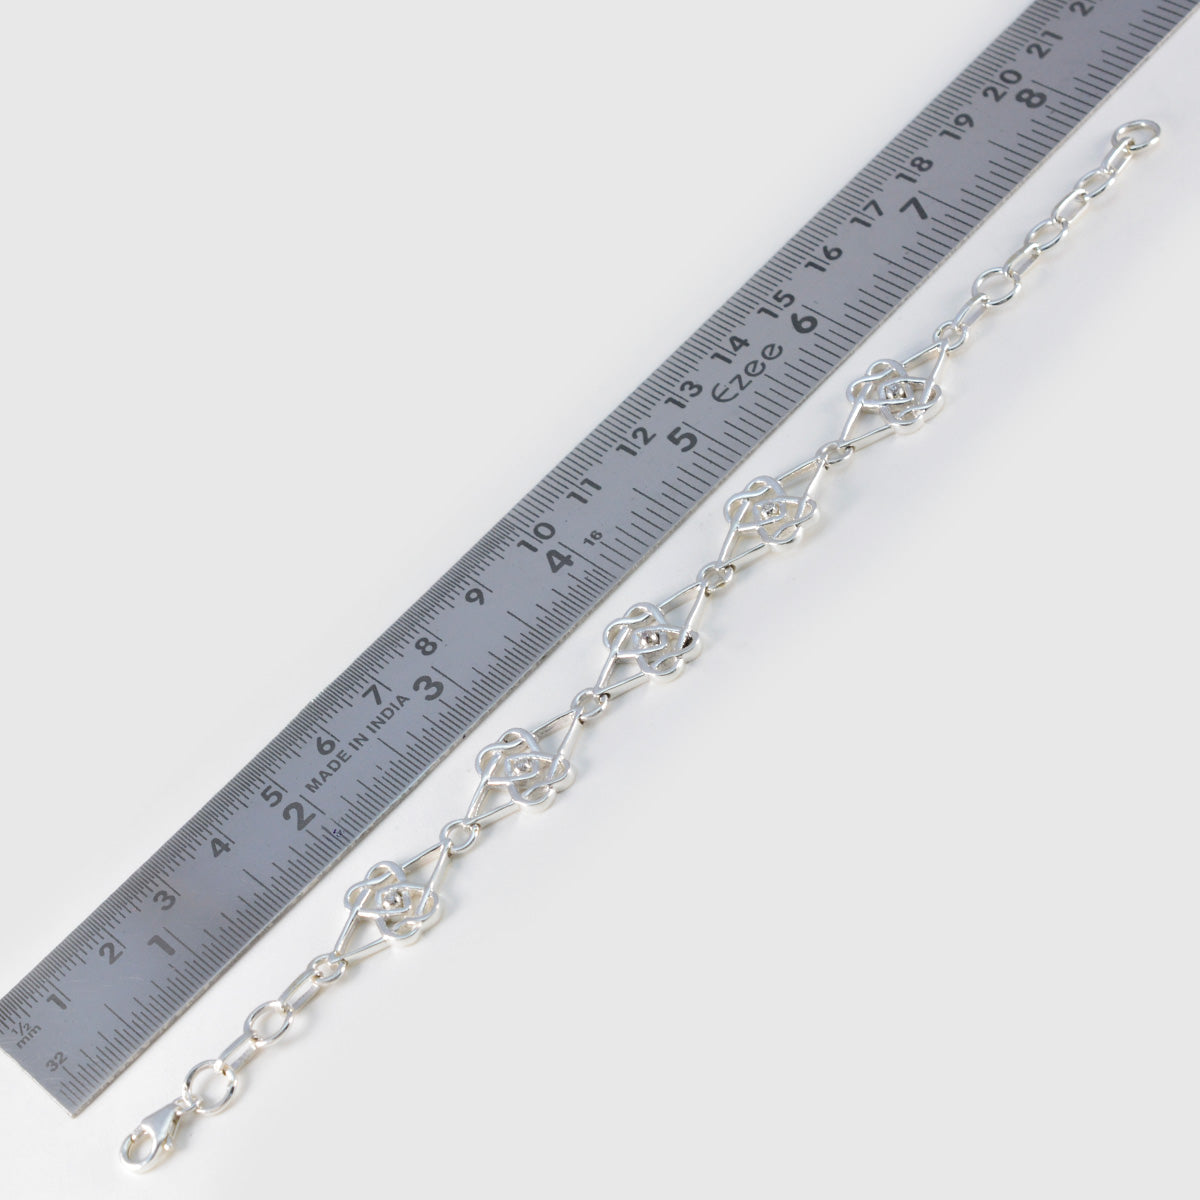 Riyo in Menge 925er Sterlingsilber-Armband für Damen, weißes CZ-Armband, Lünettenfassung, Armband mit Fischhaken-Gliederarmband, L, Größe 15,2–21,6 cm.